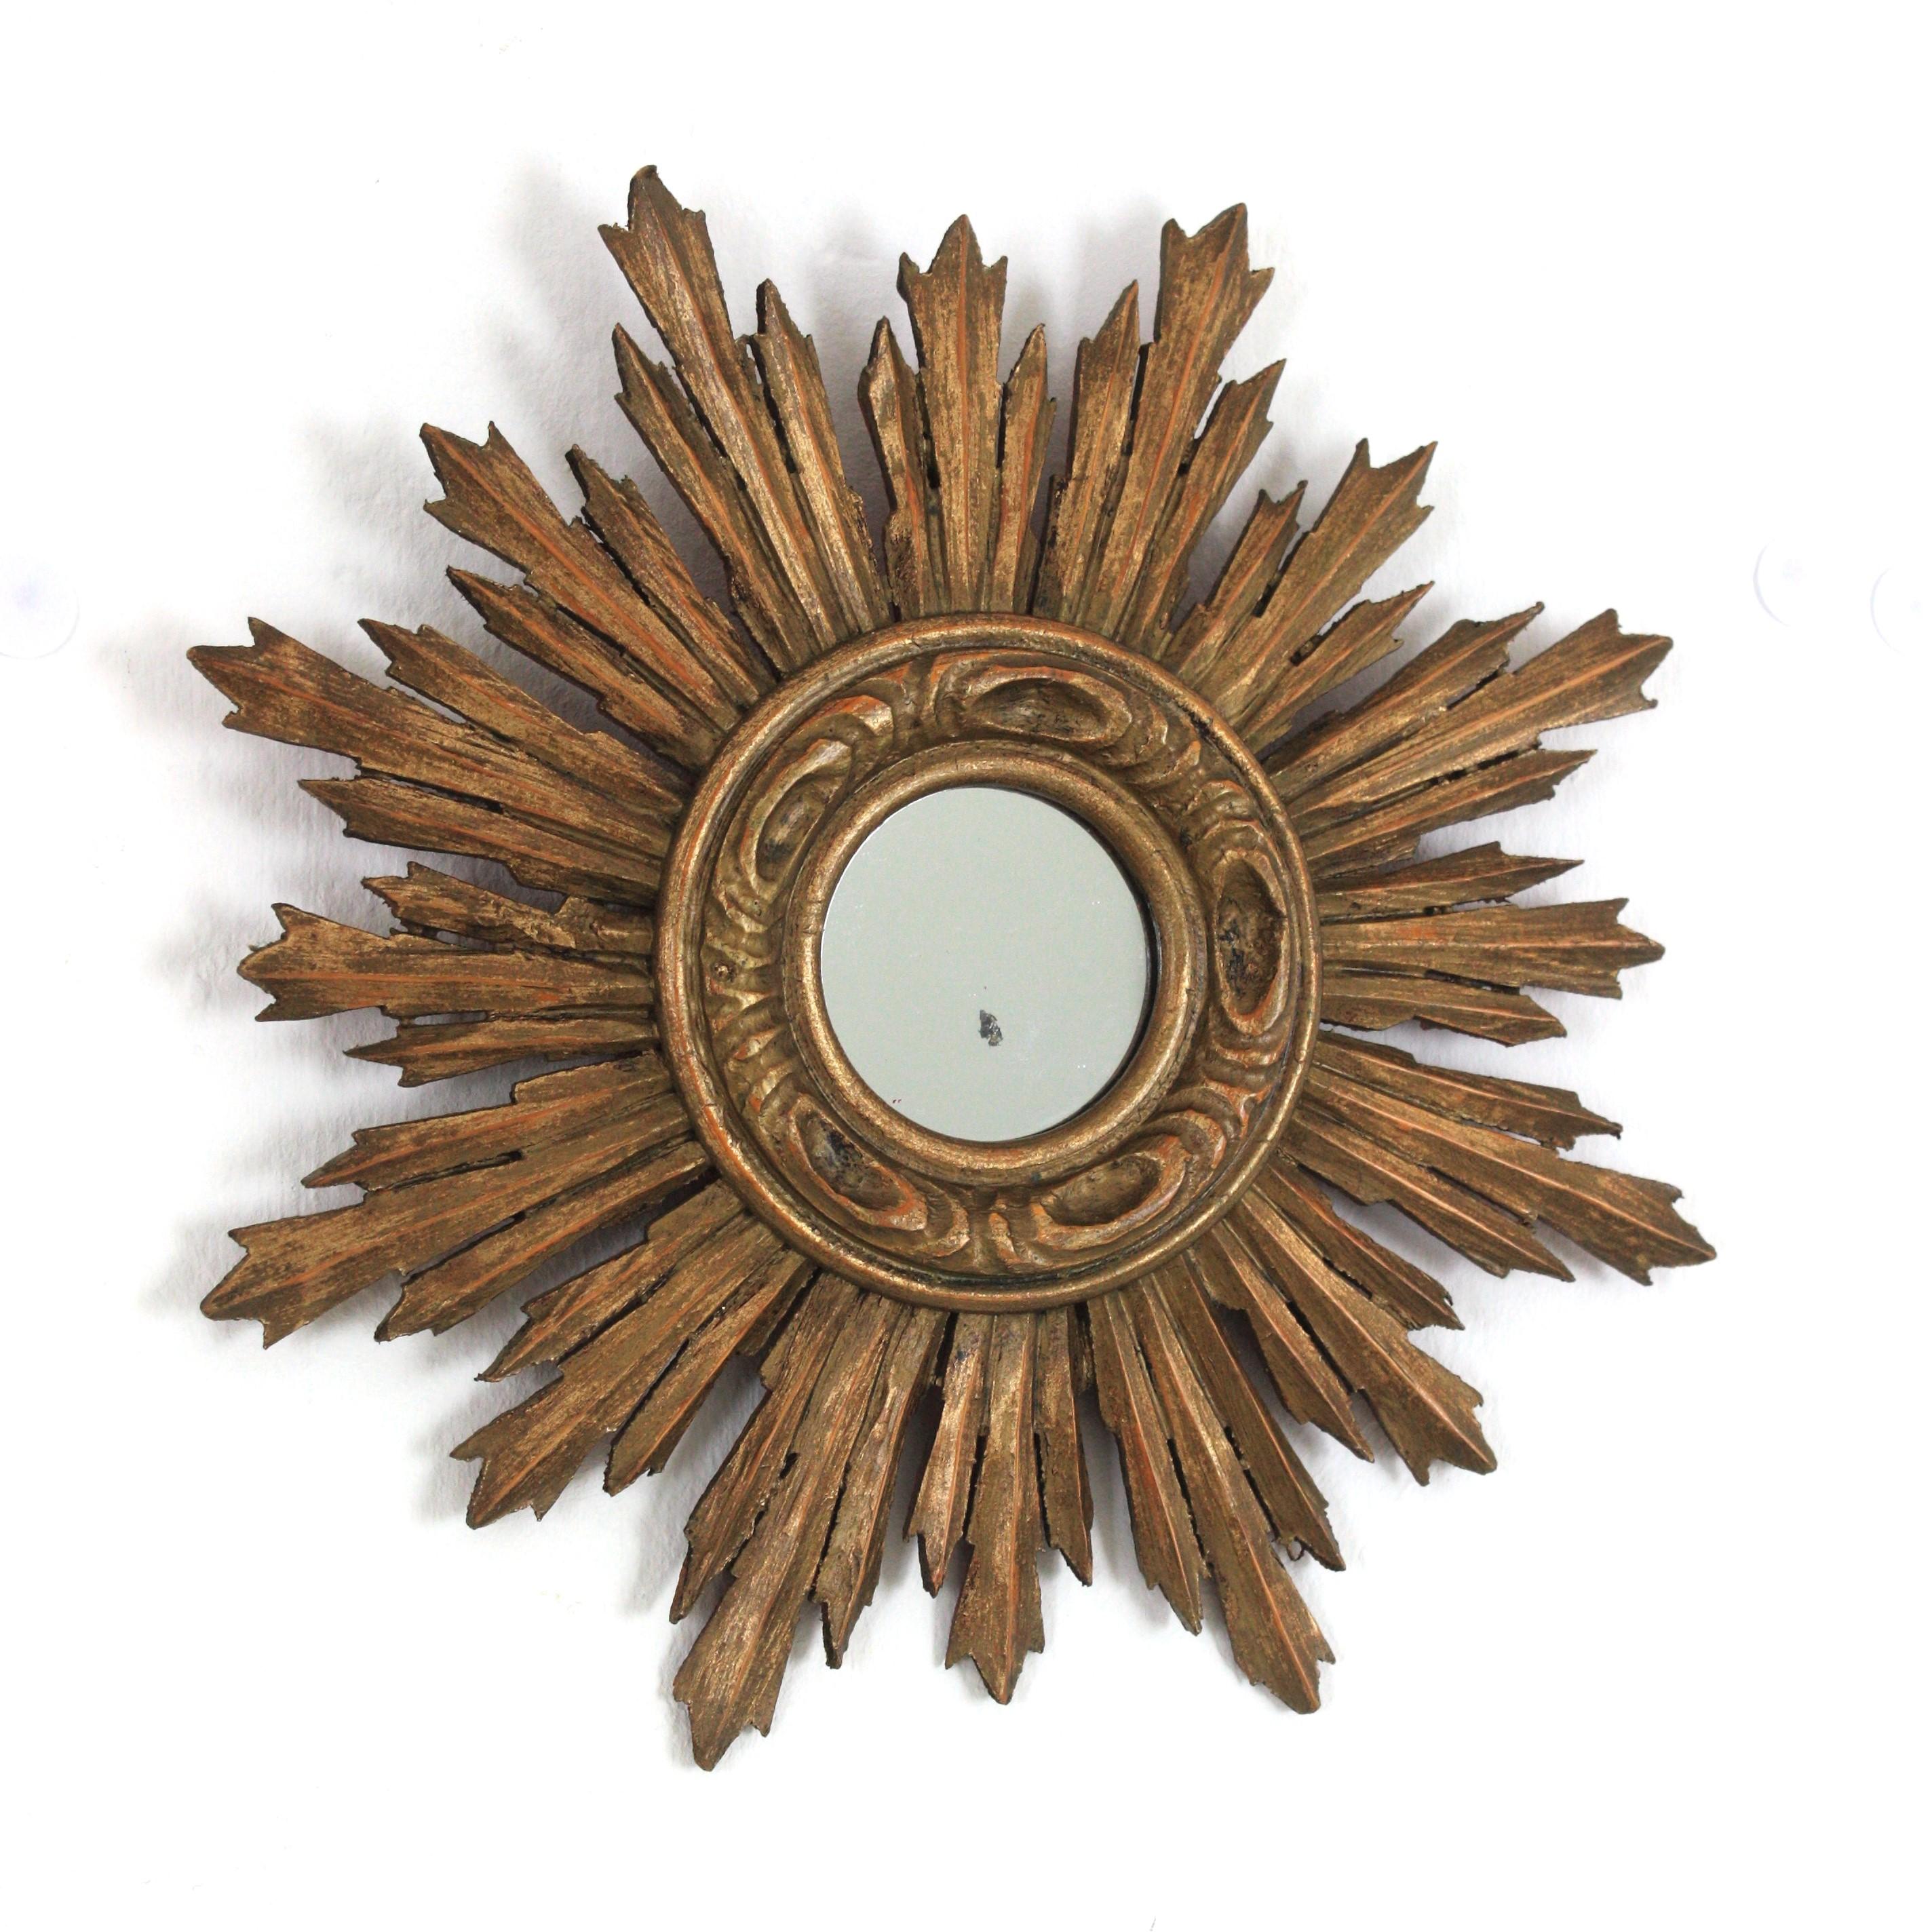 Miroir en bois doré de style baroque espagnol, 1940s-1950s
Joli miroir en bois doré de style baroque de taille réduite avec finition à la feuille d'or. 
Ce magnifique miroir miniature en forme de soleil a un cadre composé de rayons de différentes